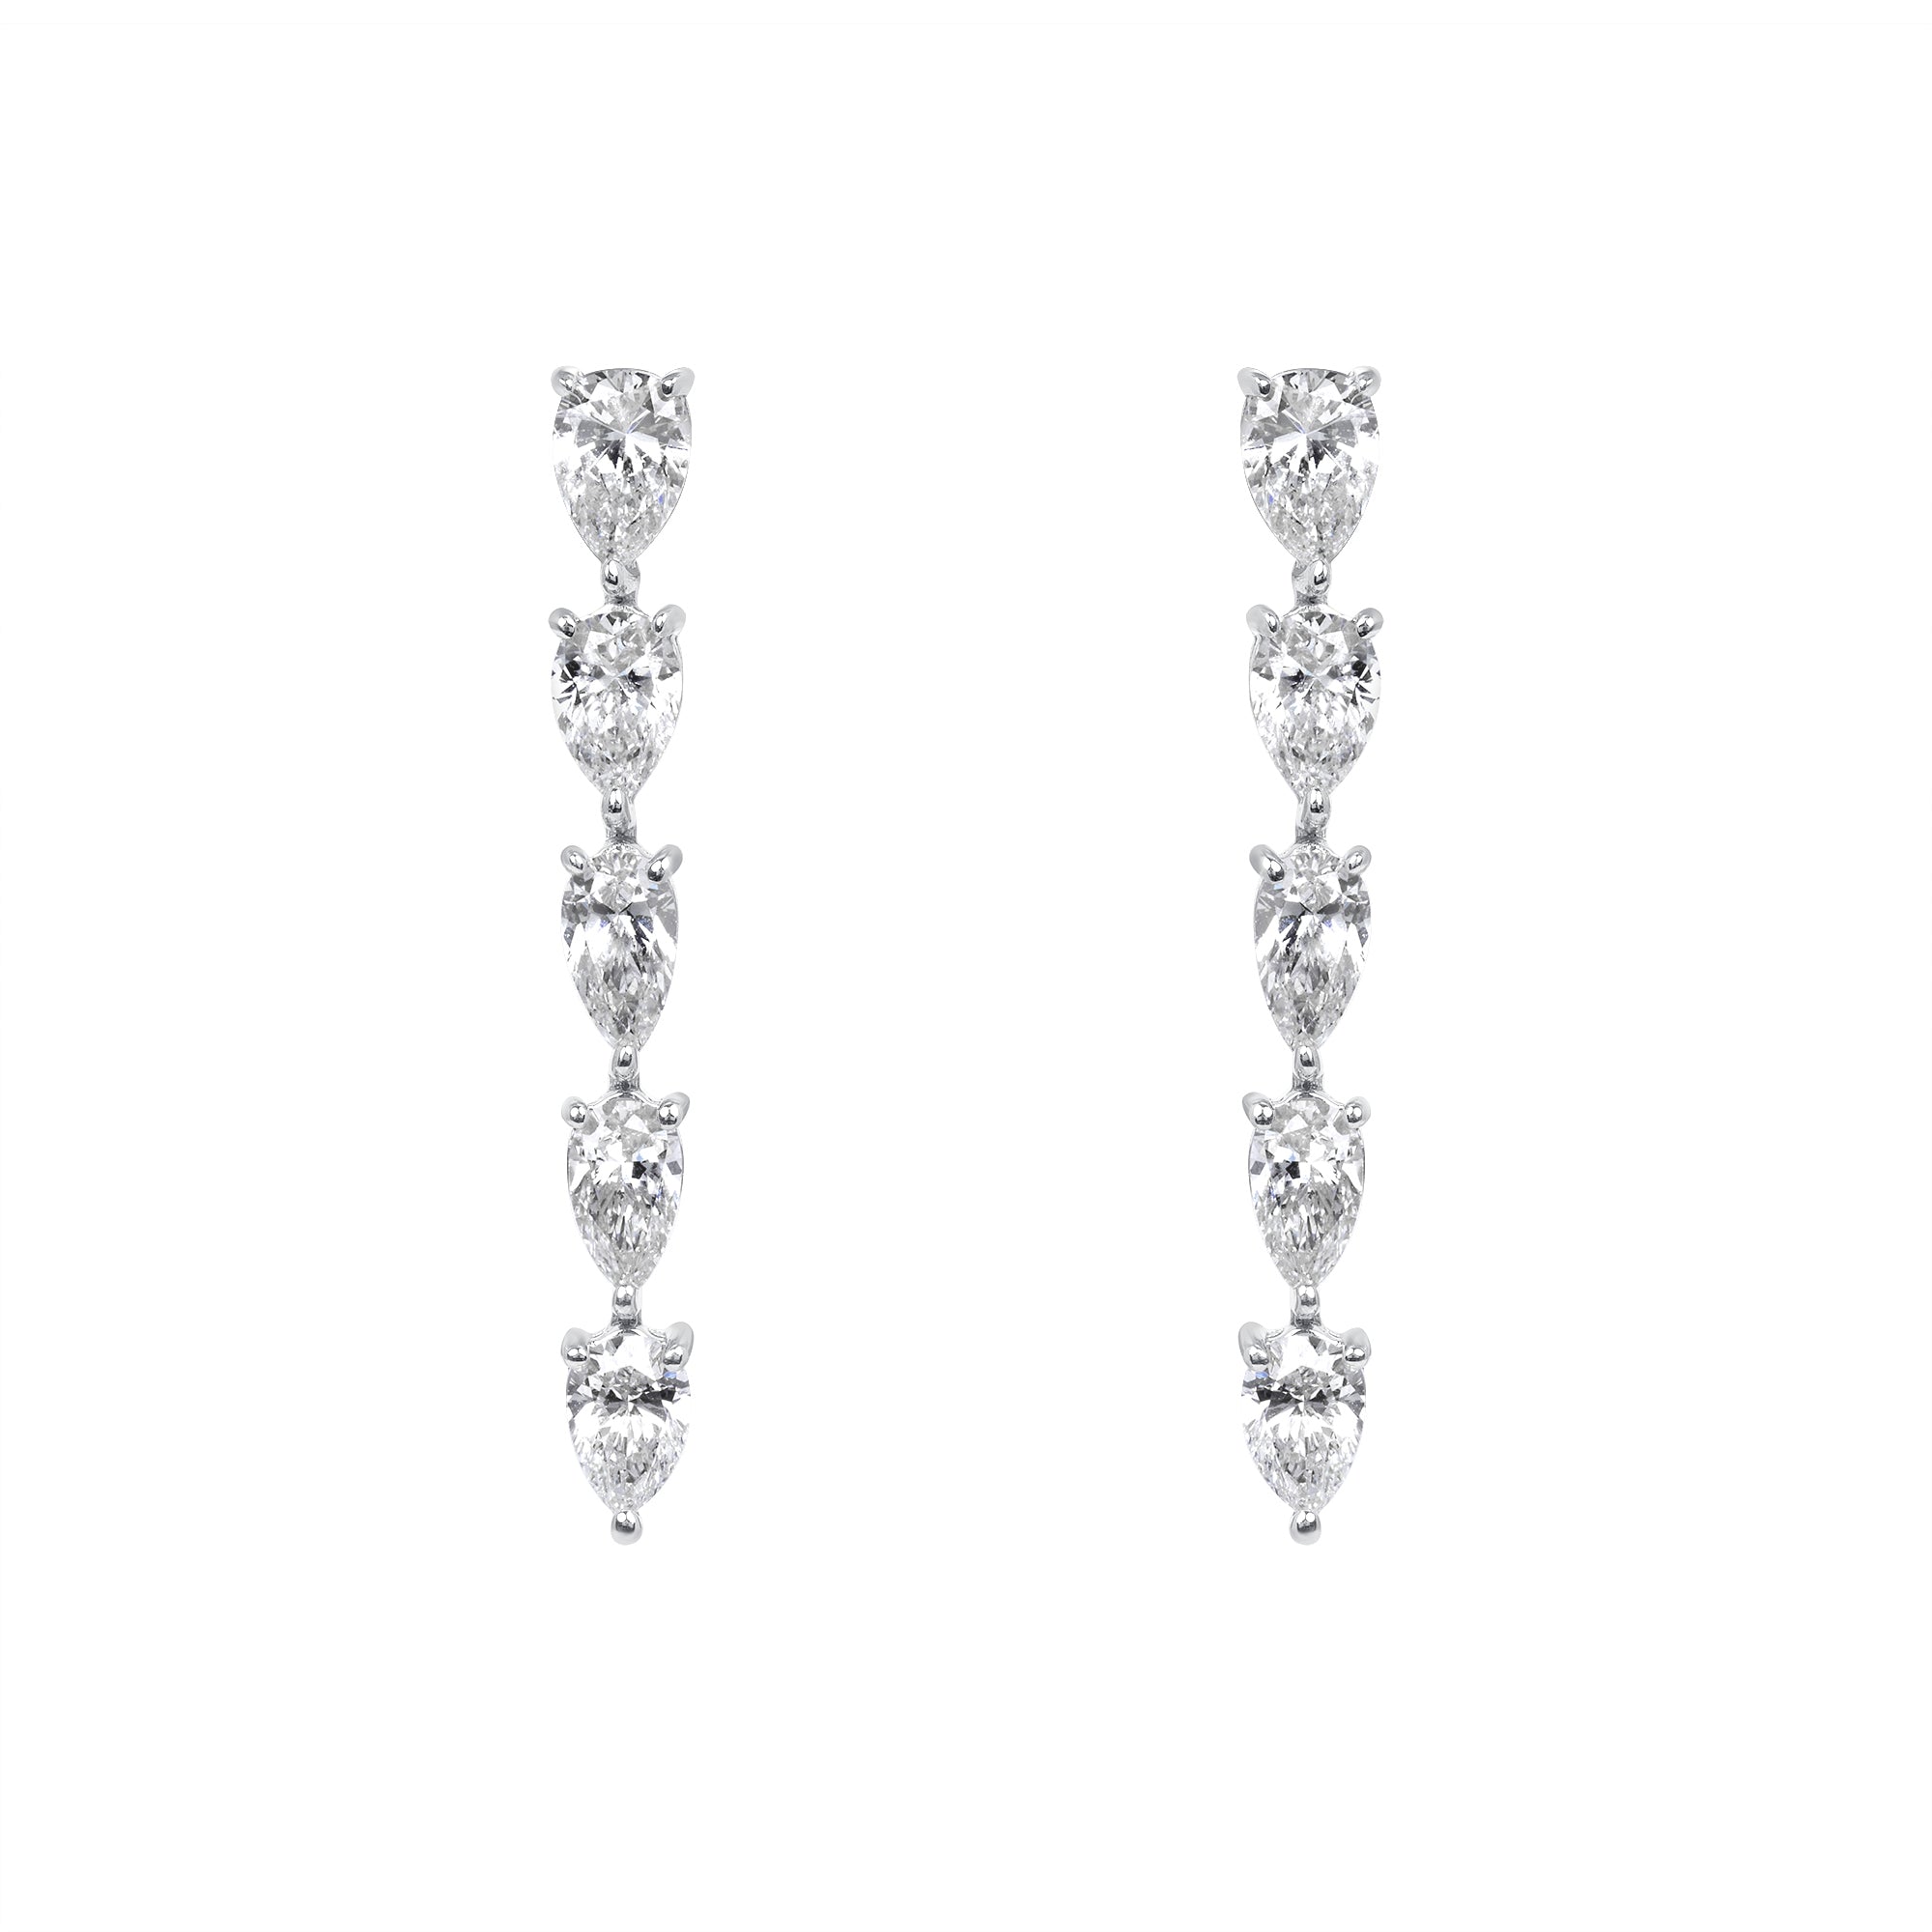 2.02ctw Pear Shape Diamond Dangle Earrings in 18K White Gold